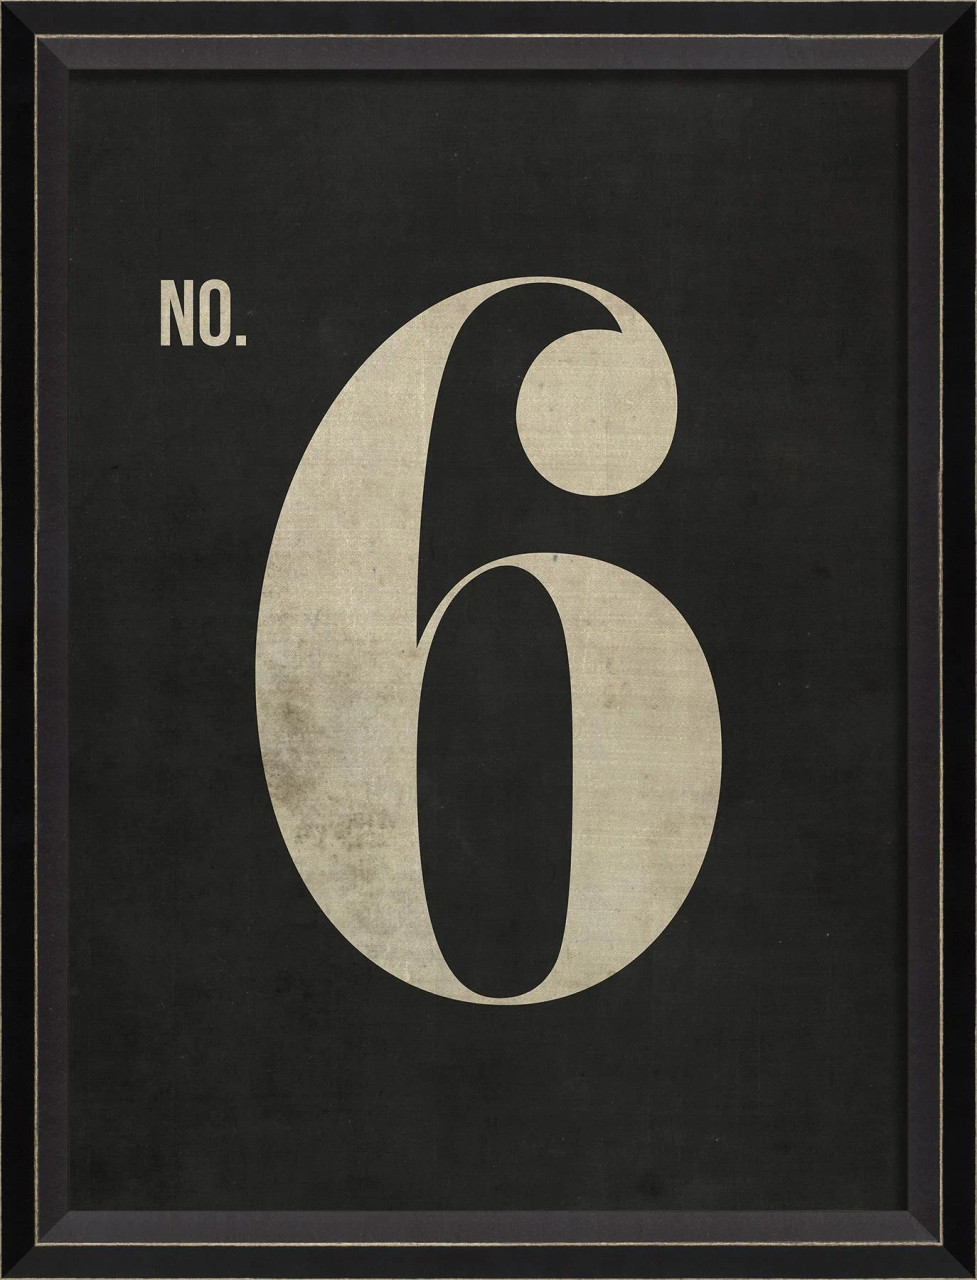 Number 6 on black - large